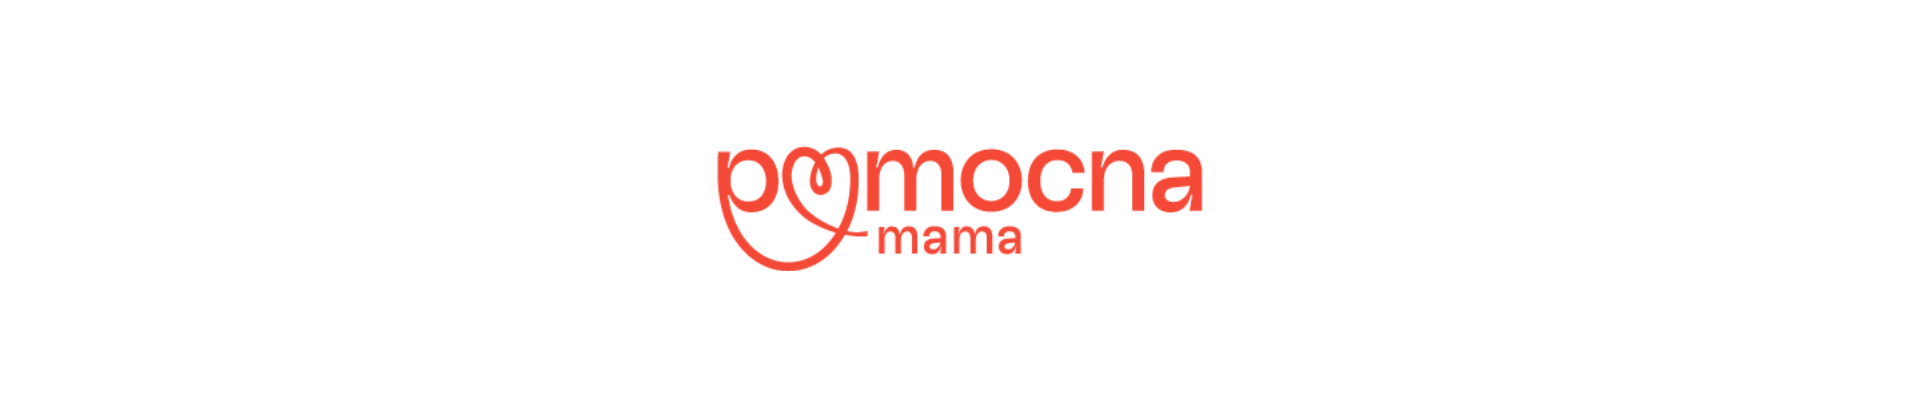 Pomocna mama logo